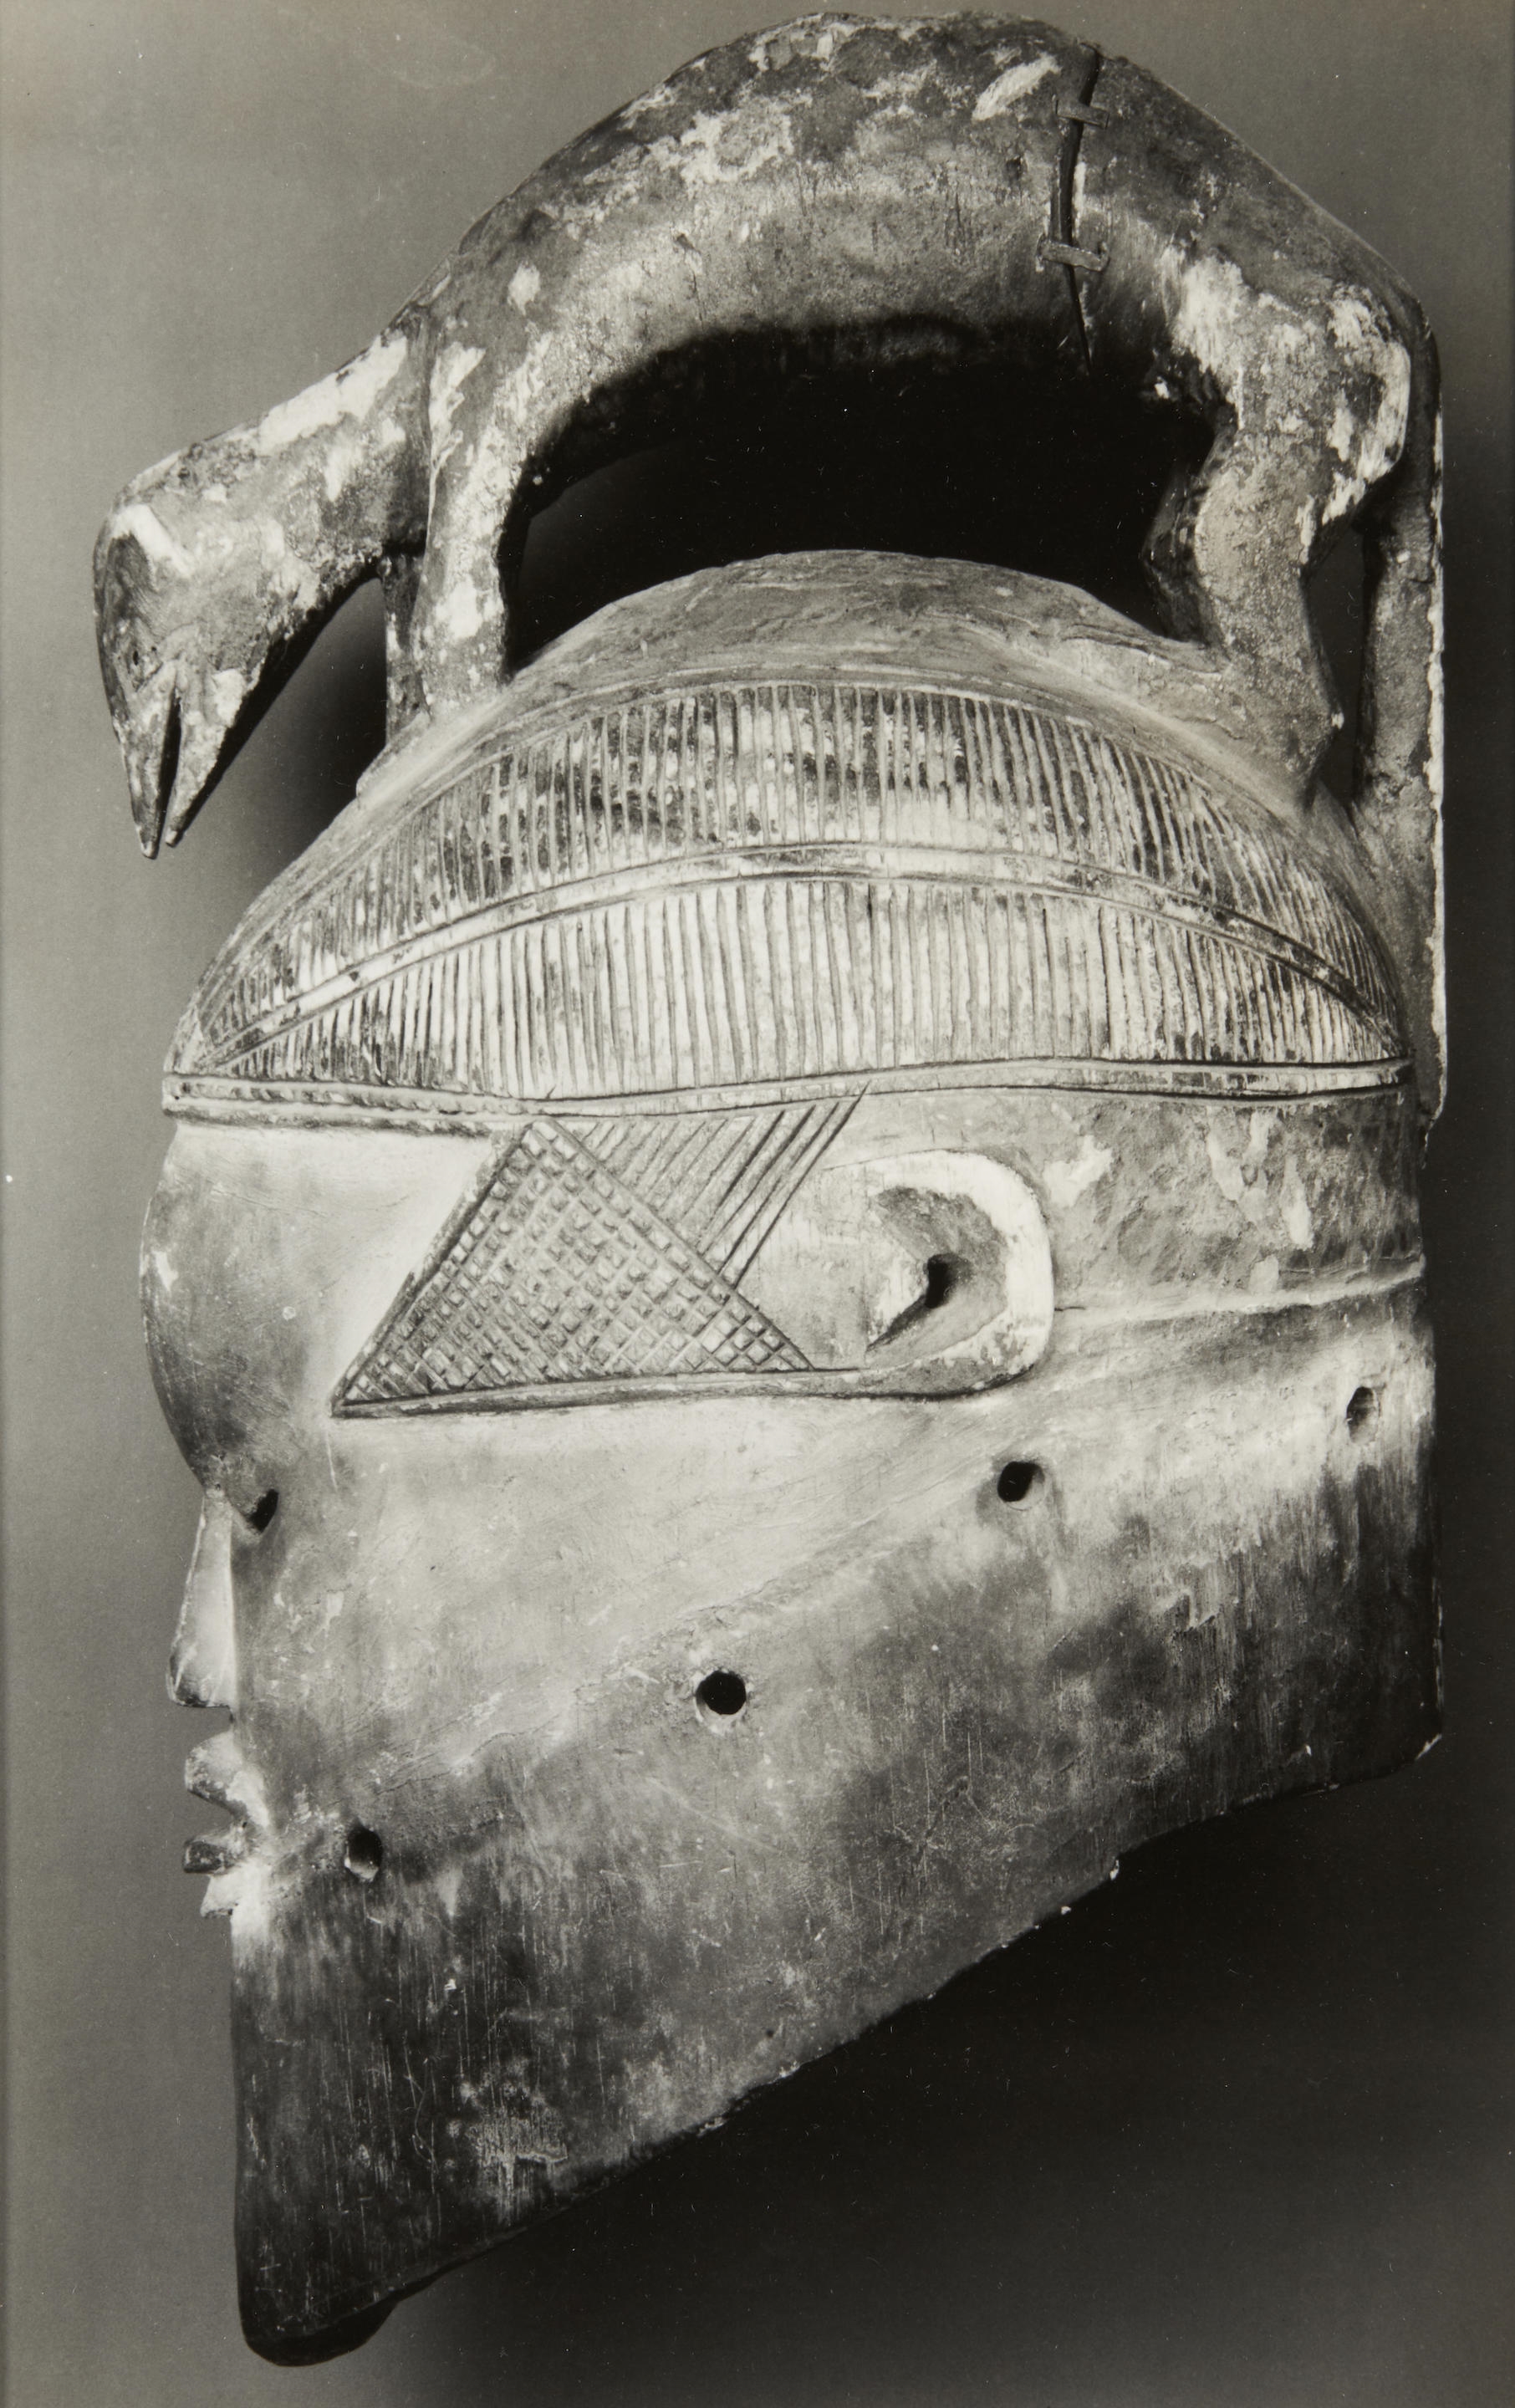 Congo Helmet Mask by Walker Evans, 1935